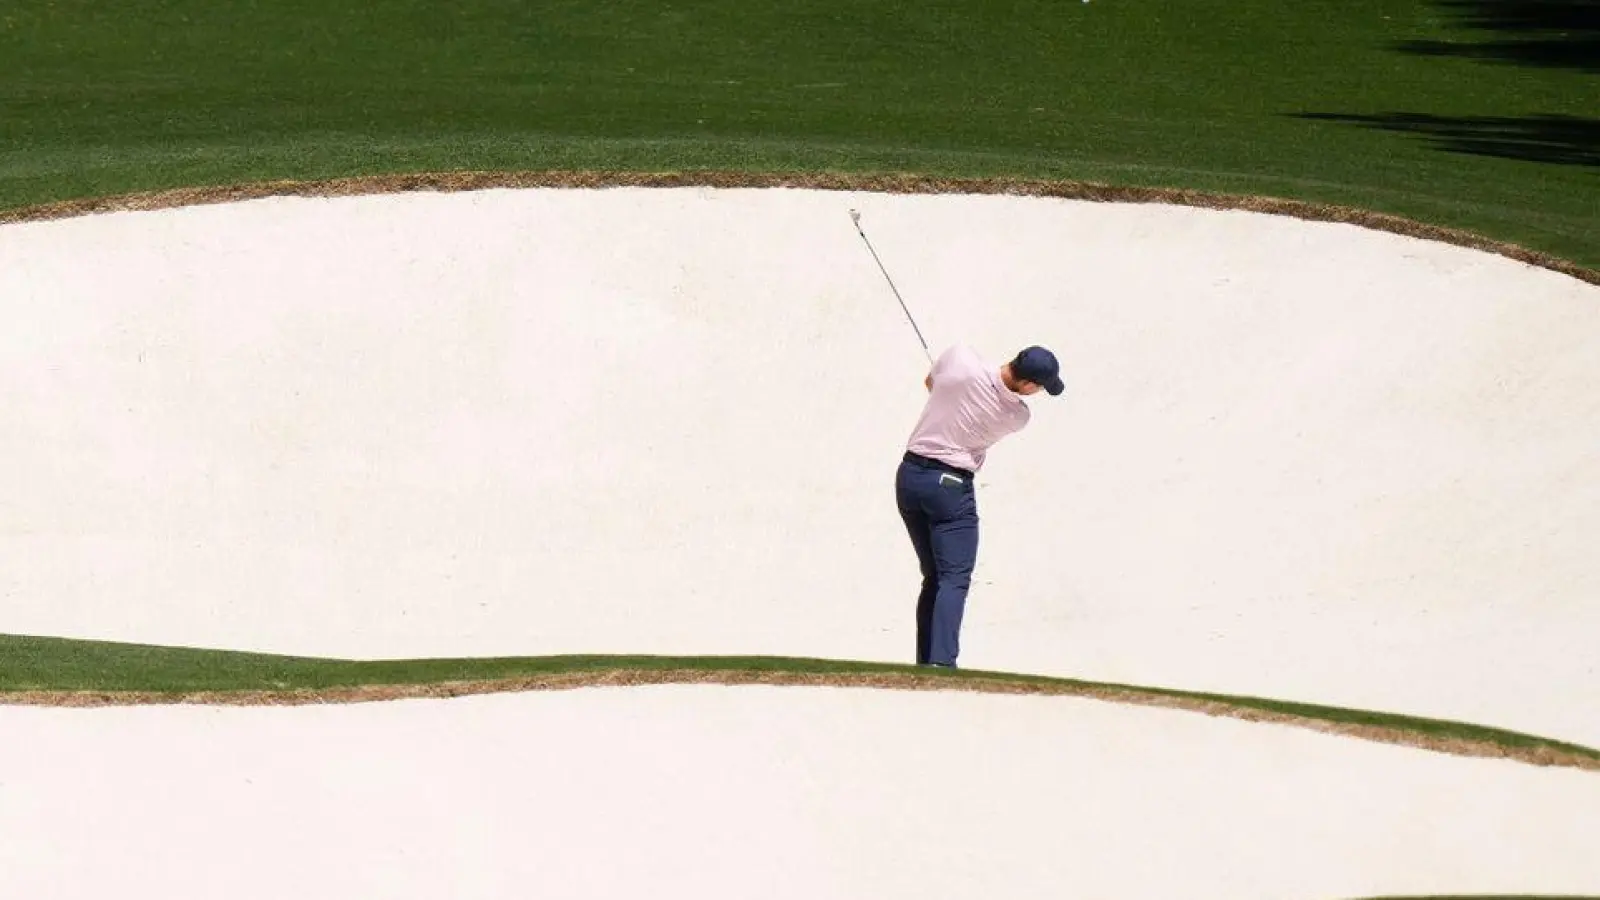 Spannung in der Ferne: Der Golfspieler Rory McIlroy aus Nordirland schlägt am achten Loch. Seit 1934 findet das Golfturnier US Masters auf demselben Golfplatz in Georgia, USA statt. (Foto: Charlie Riedel/AP/dpa)